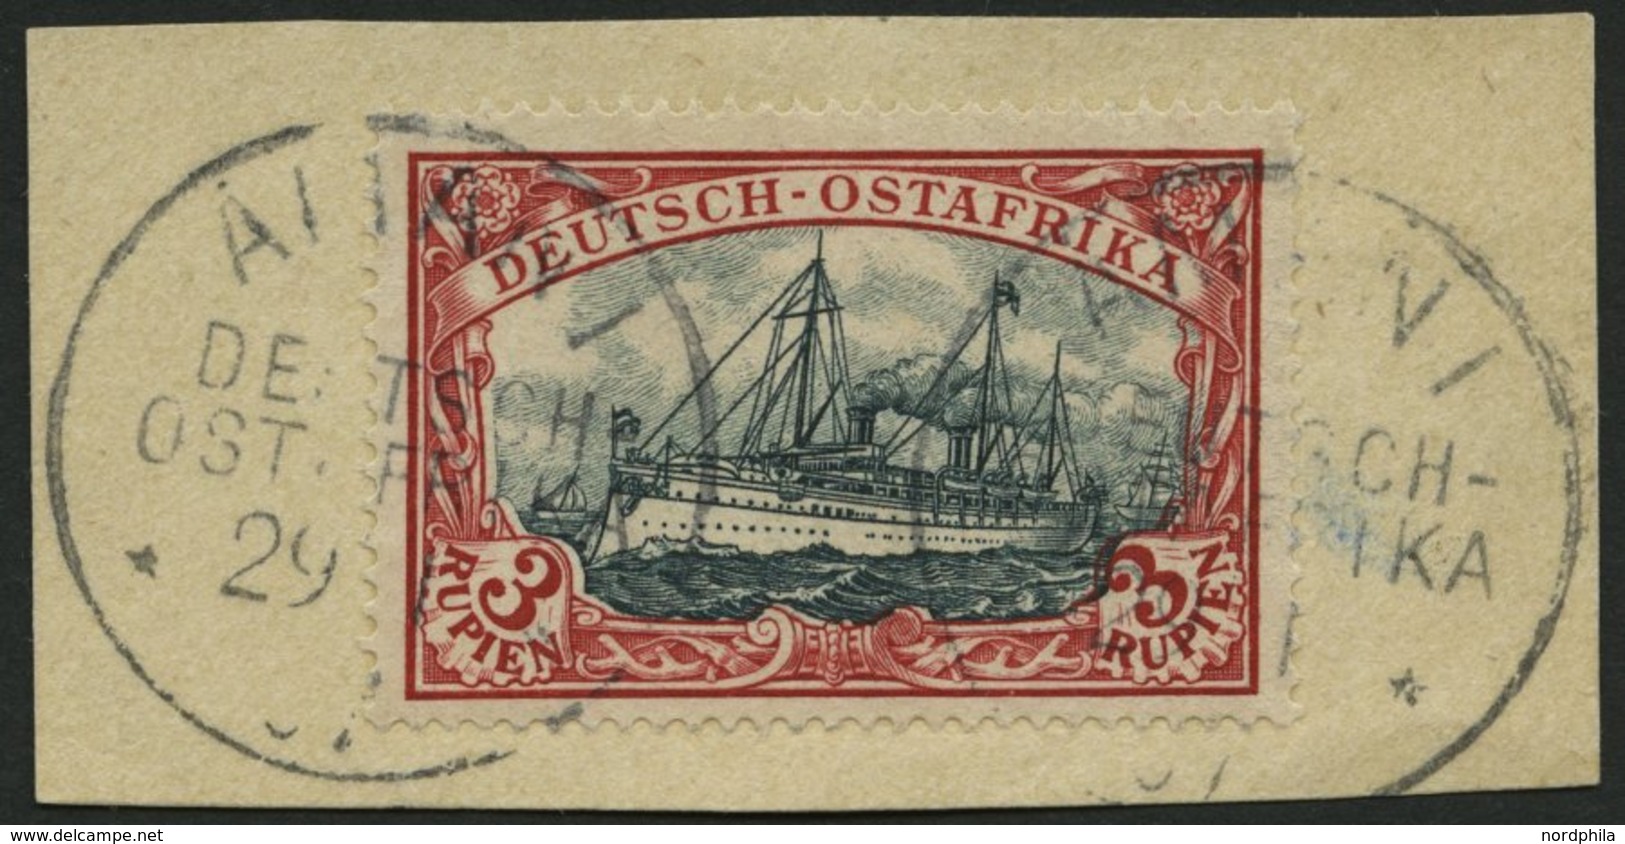 DEUTSCH-OSTAFRIKA 21b BrfStk, 1901, 3 R. Dunkelrot/grünschwarz, Ohne Wz., Stempel AMANI, Prachtbriefstück - Africa Orientale Tedesca